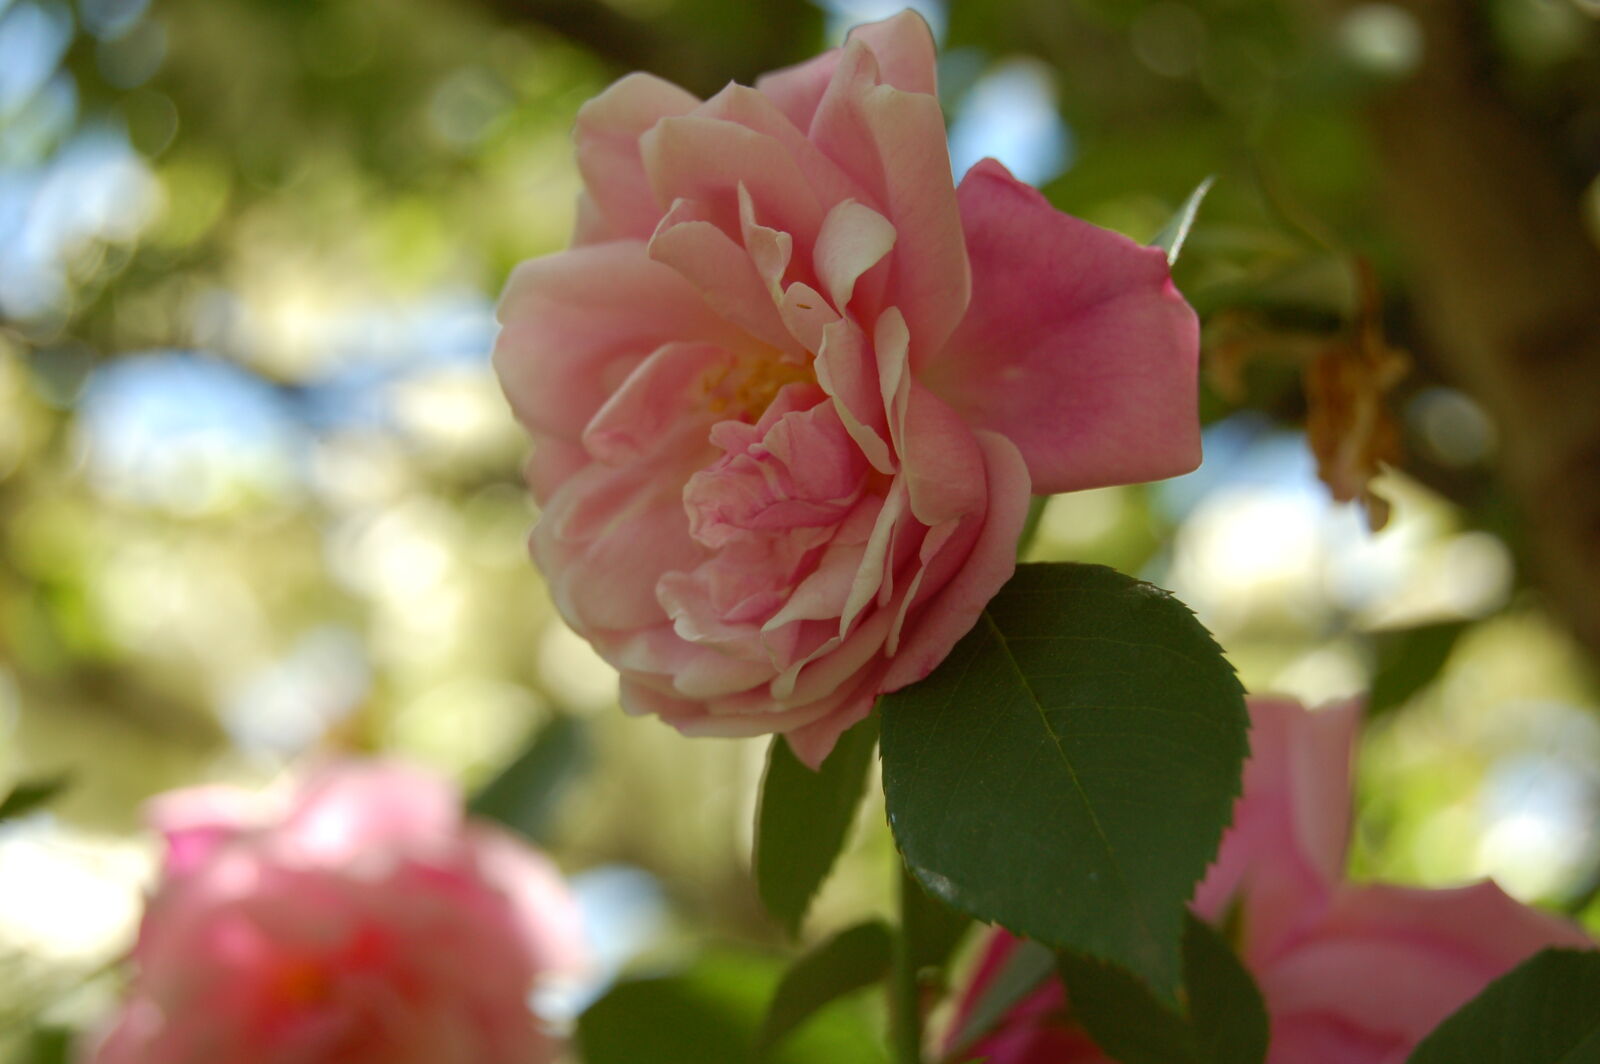 AF-S DX Zoom-Nikkor 18-55mm f/3.5-5.6G ED sample photo. Delicate, flower, flowers, garden photography